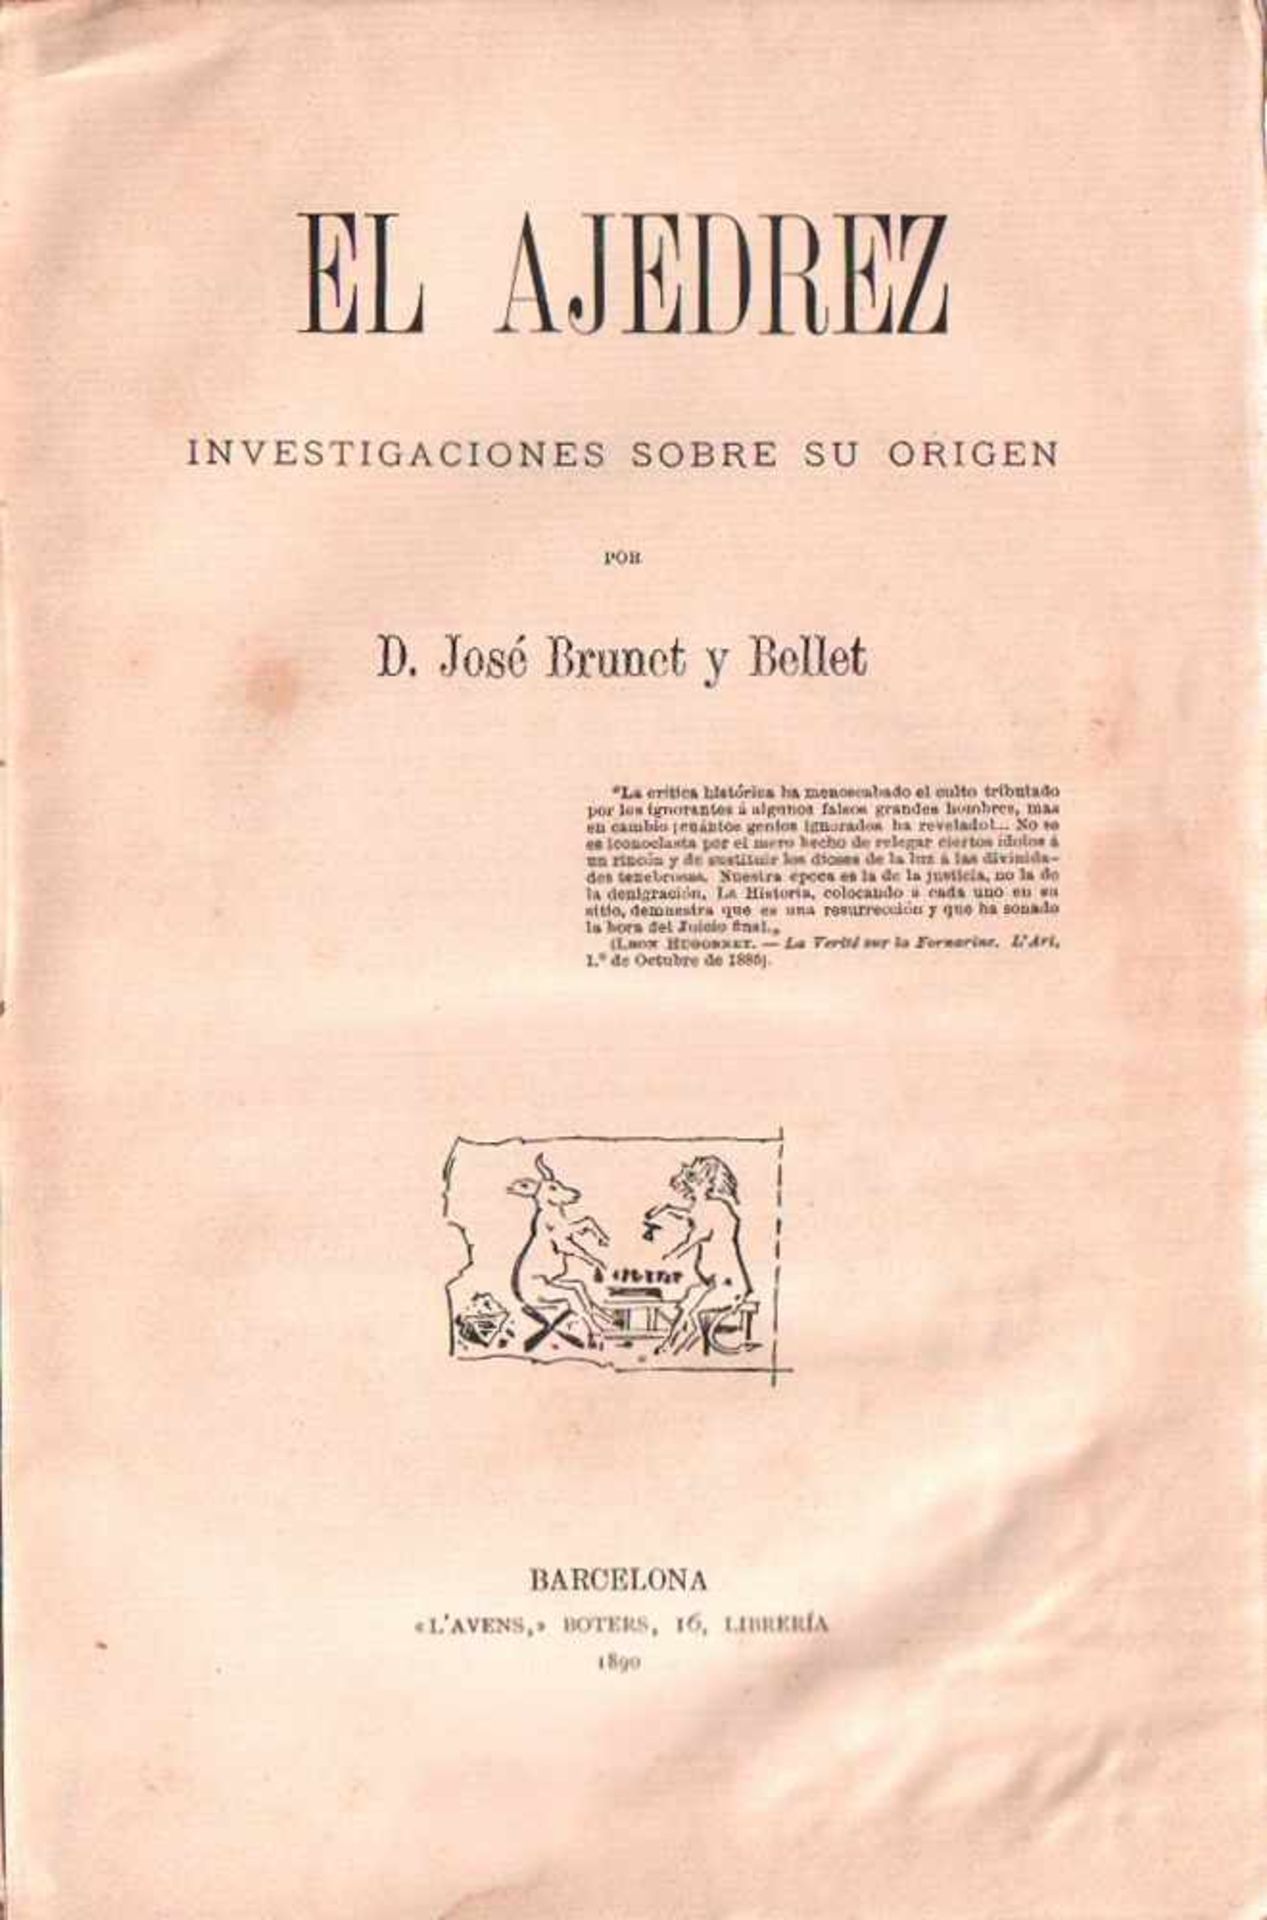 Brunet y Bellet, José.El ajedrez. Investigaciones sobre su origen. Barcelona, L'Avens, 1890. 8°. Mit